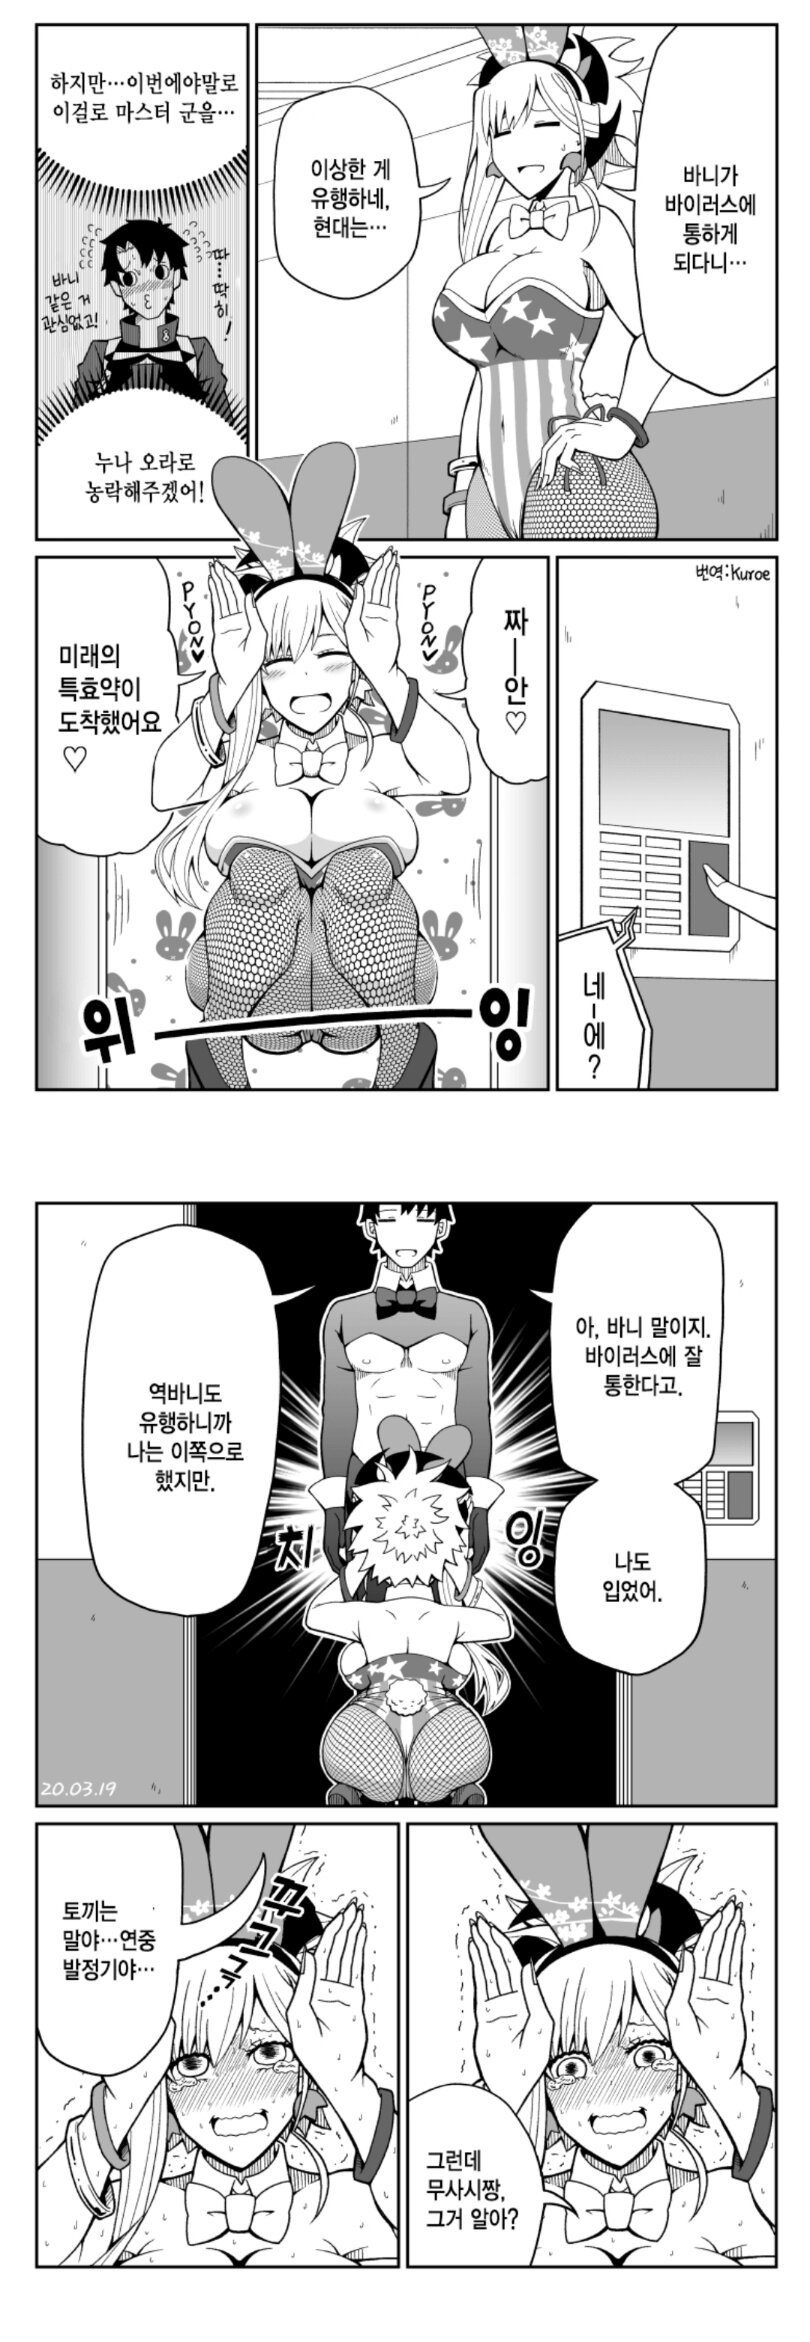 페그오)바니옷 입는.manga